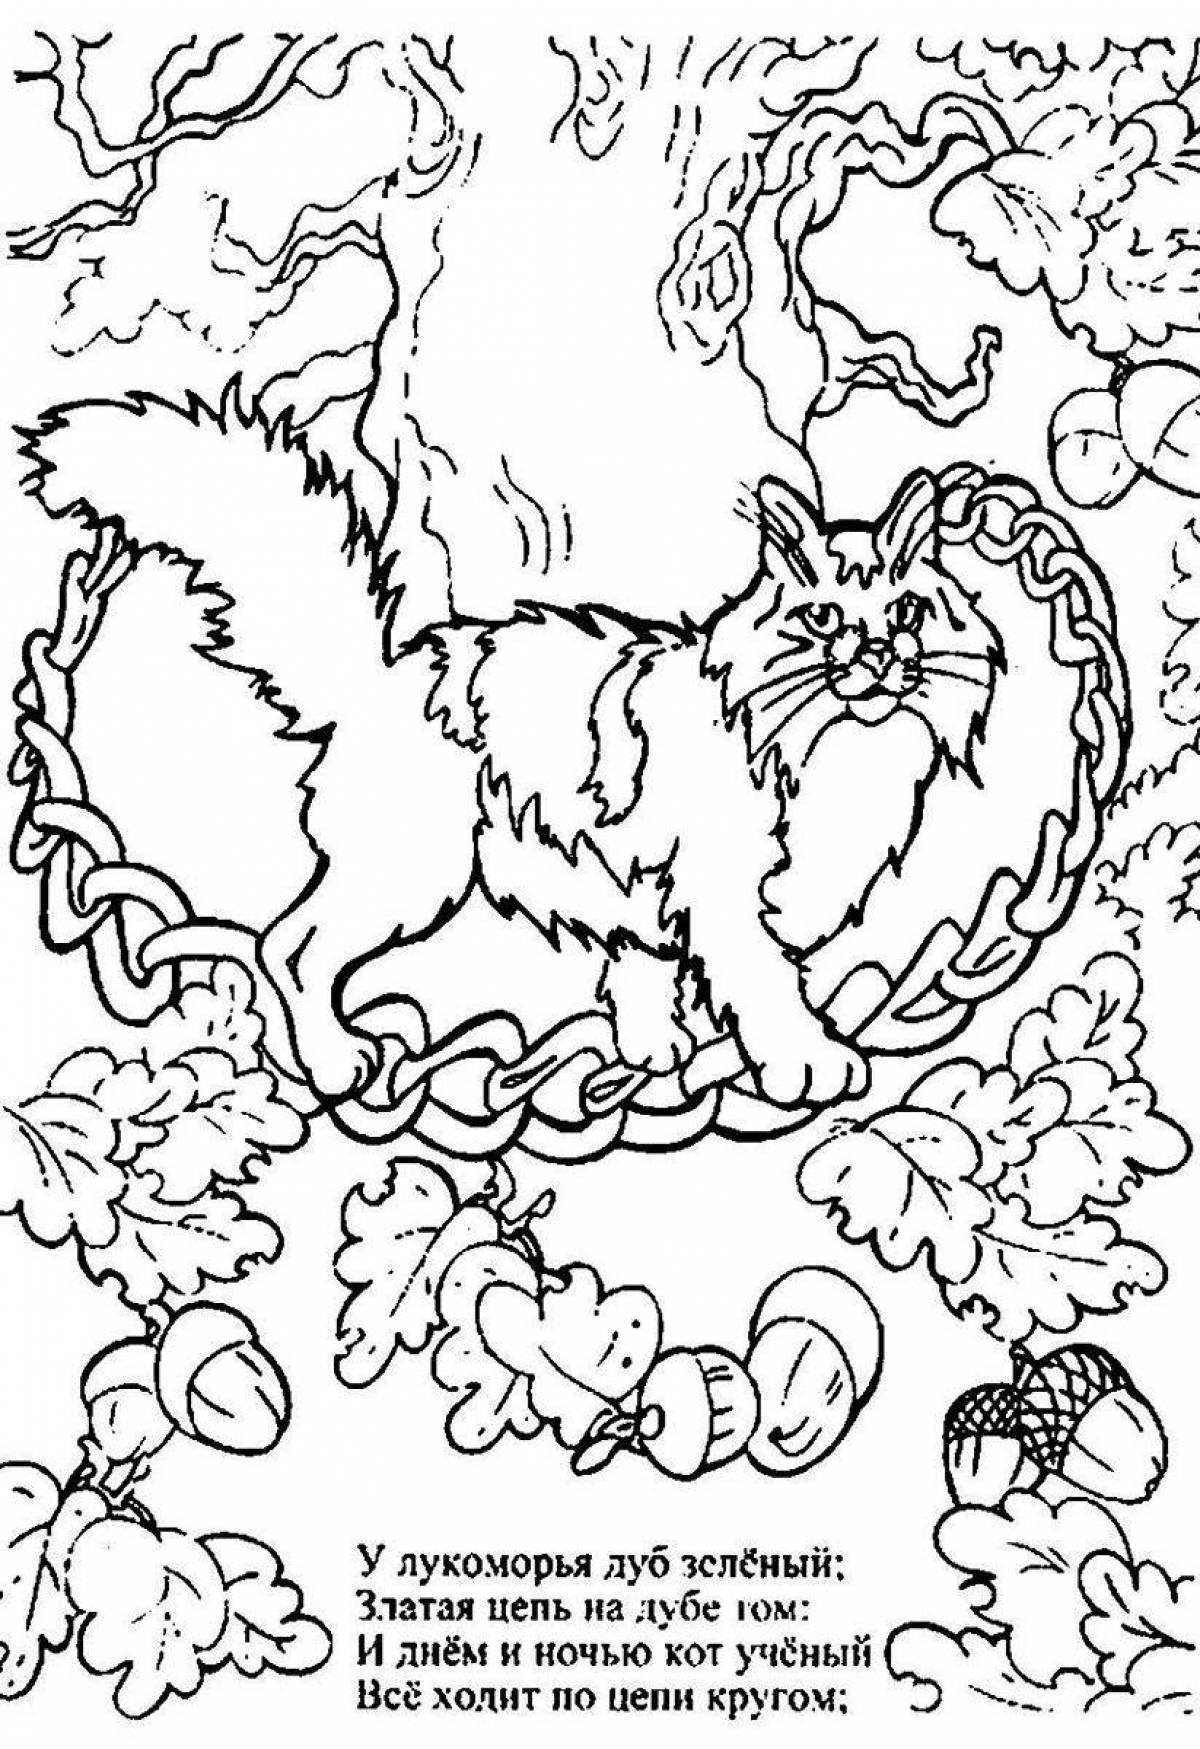 Кот учёный рыжий у лукоморья дуб зелёный рисунок | Рисунок, Рисунки, Сказочные поделки